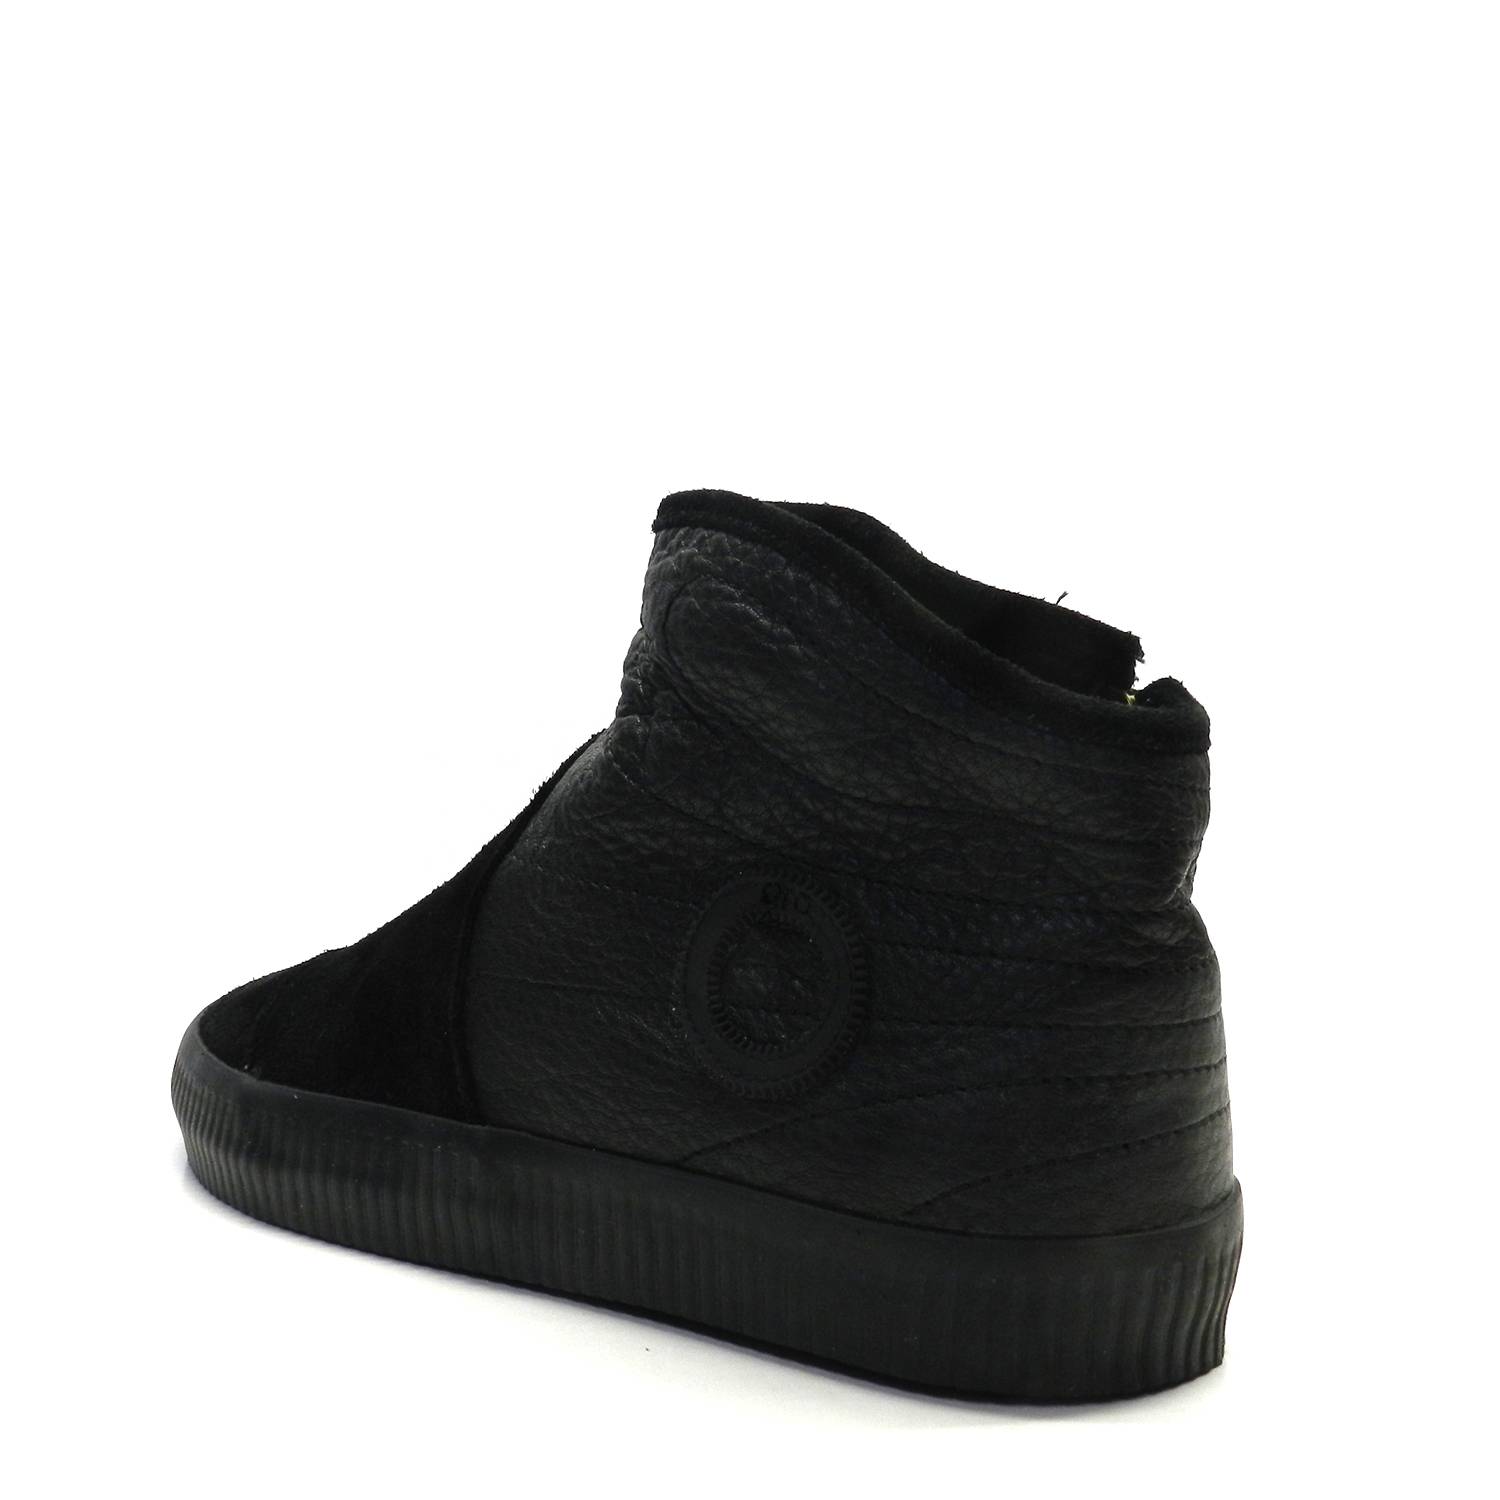 Sneakers - ARO 3380 NOELLE BLACK